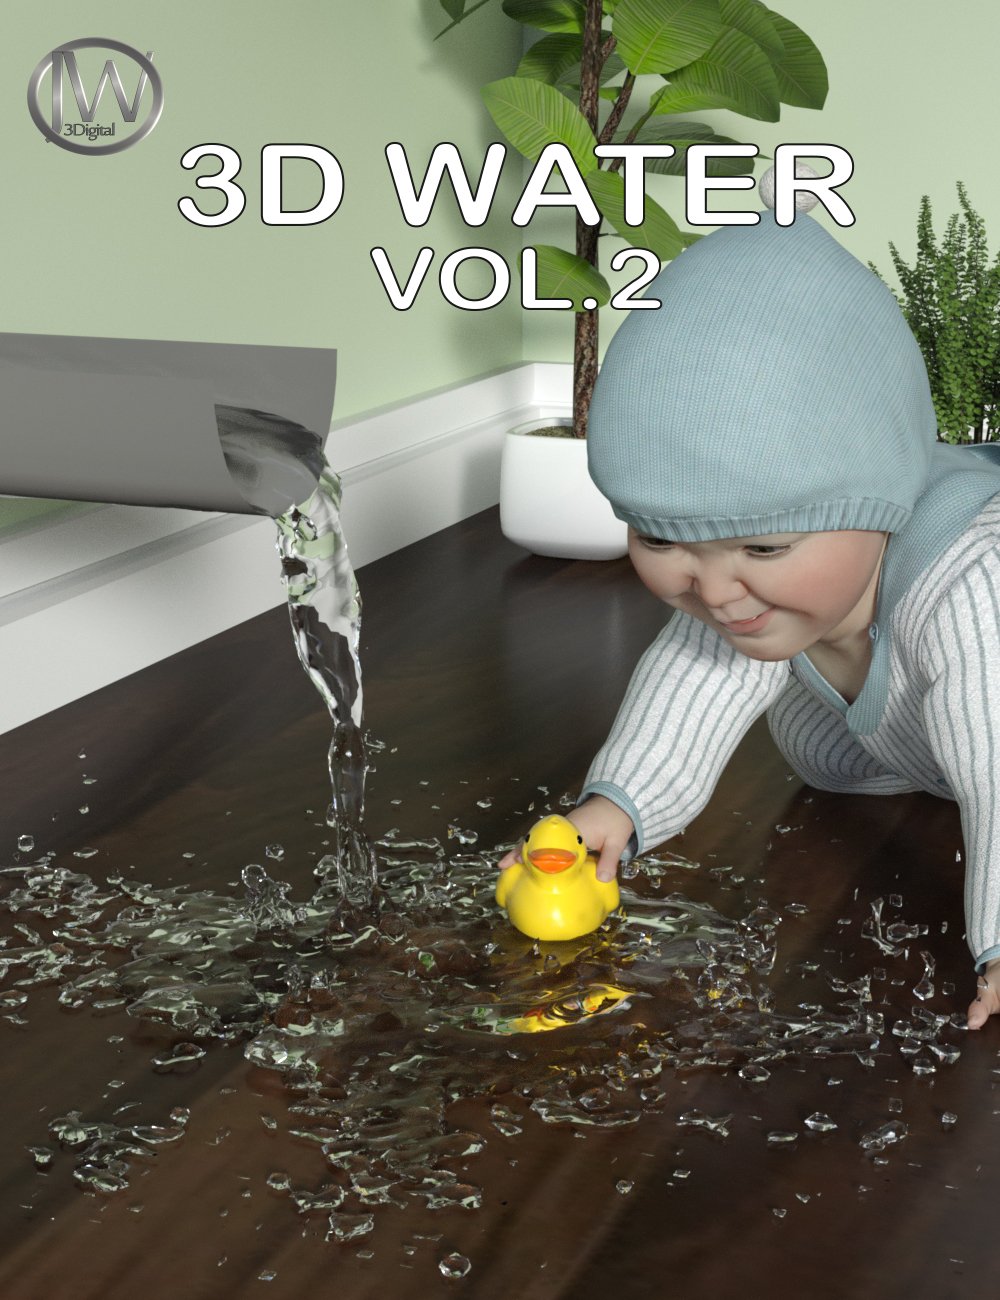 JW 3D Water Props Vol. 2 by: JWolf, 3D Models by Daz 3D